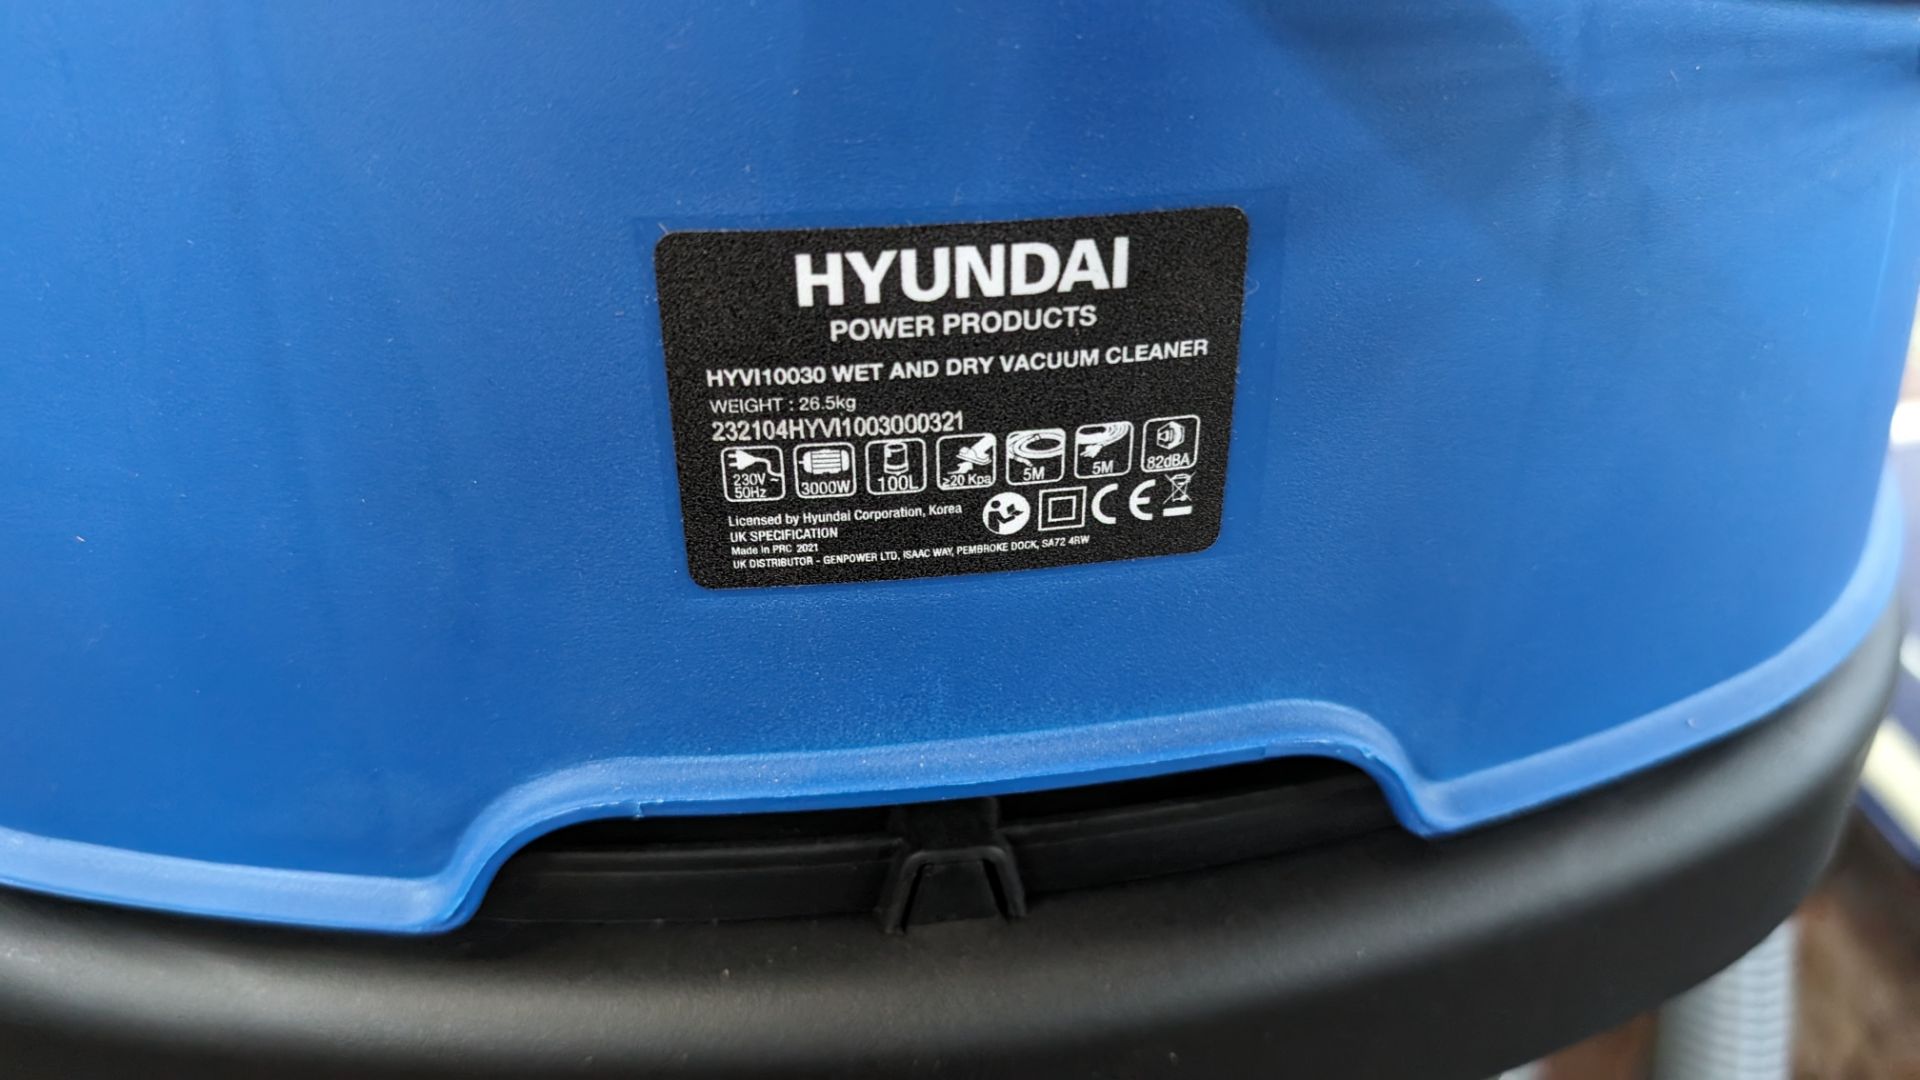 Hyundai model HYVI10030 wet and dry vacuum cleaner - Image 5 of 8